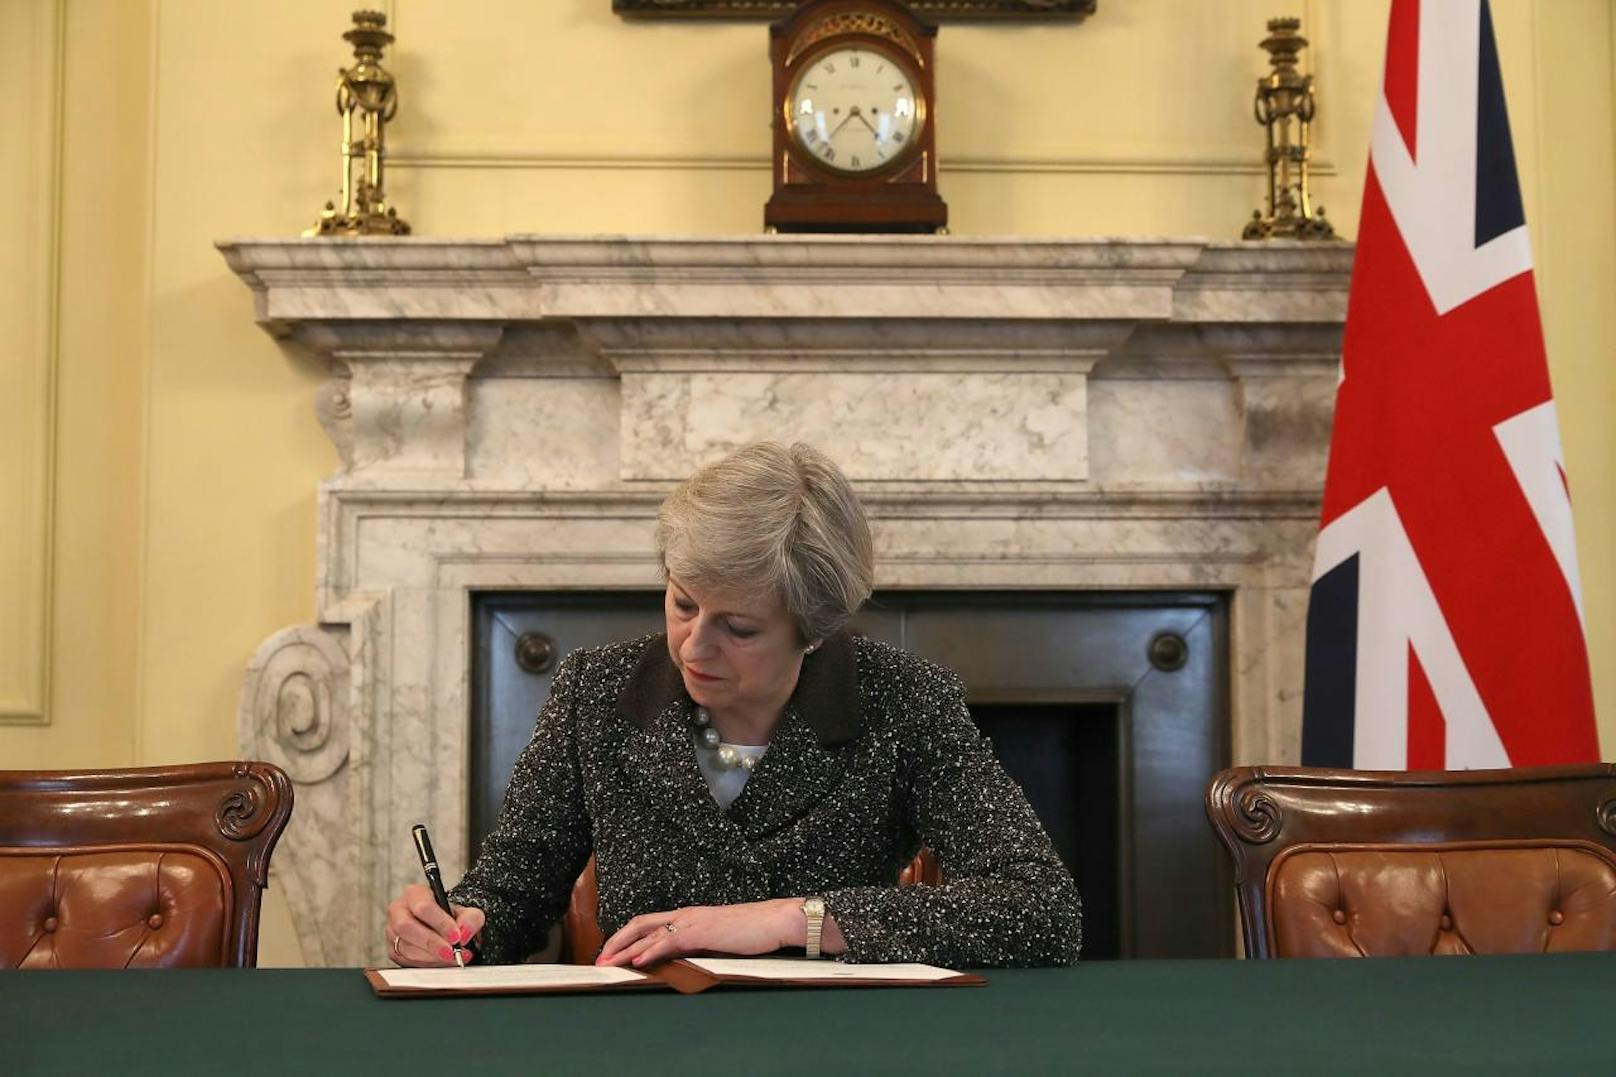 <b>28. März 2017:</b> <b>Großbritannien sagt offiziell Bye-Bye</b>, Premierministerin Theresa May bei der Unterzeichnung der Brexit-Erklärung nach Artikel 50. Um 13.30 Uhr übergab der britische EU-Botschafter Tim Barrow den Austritts-Antrag an EU-Ratspräsident Donald Tusk. Der Austrittsprozess wird uns mindestens noch bis 2019 beschäftigen. 

<b>Mehr Infos: </b> <a href="https://www.heute.at/welt/news/story/Theresa-May-verkuendete-offiziell-den-Brexit-15865948" target="_blank">Theresa May verkündete offiziell den Brexit</a>